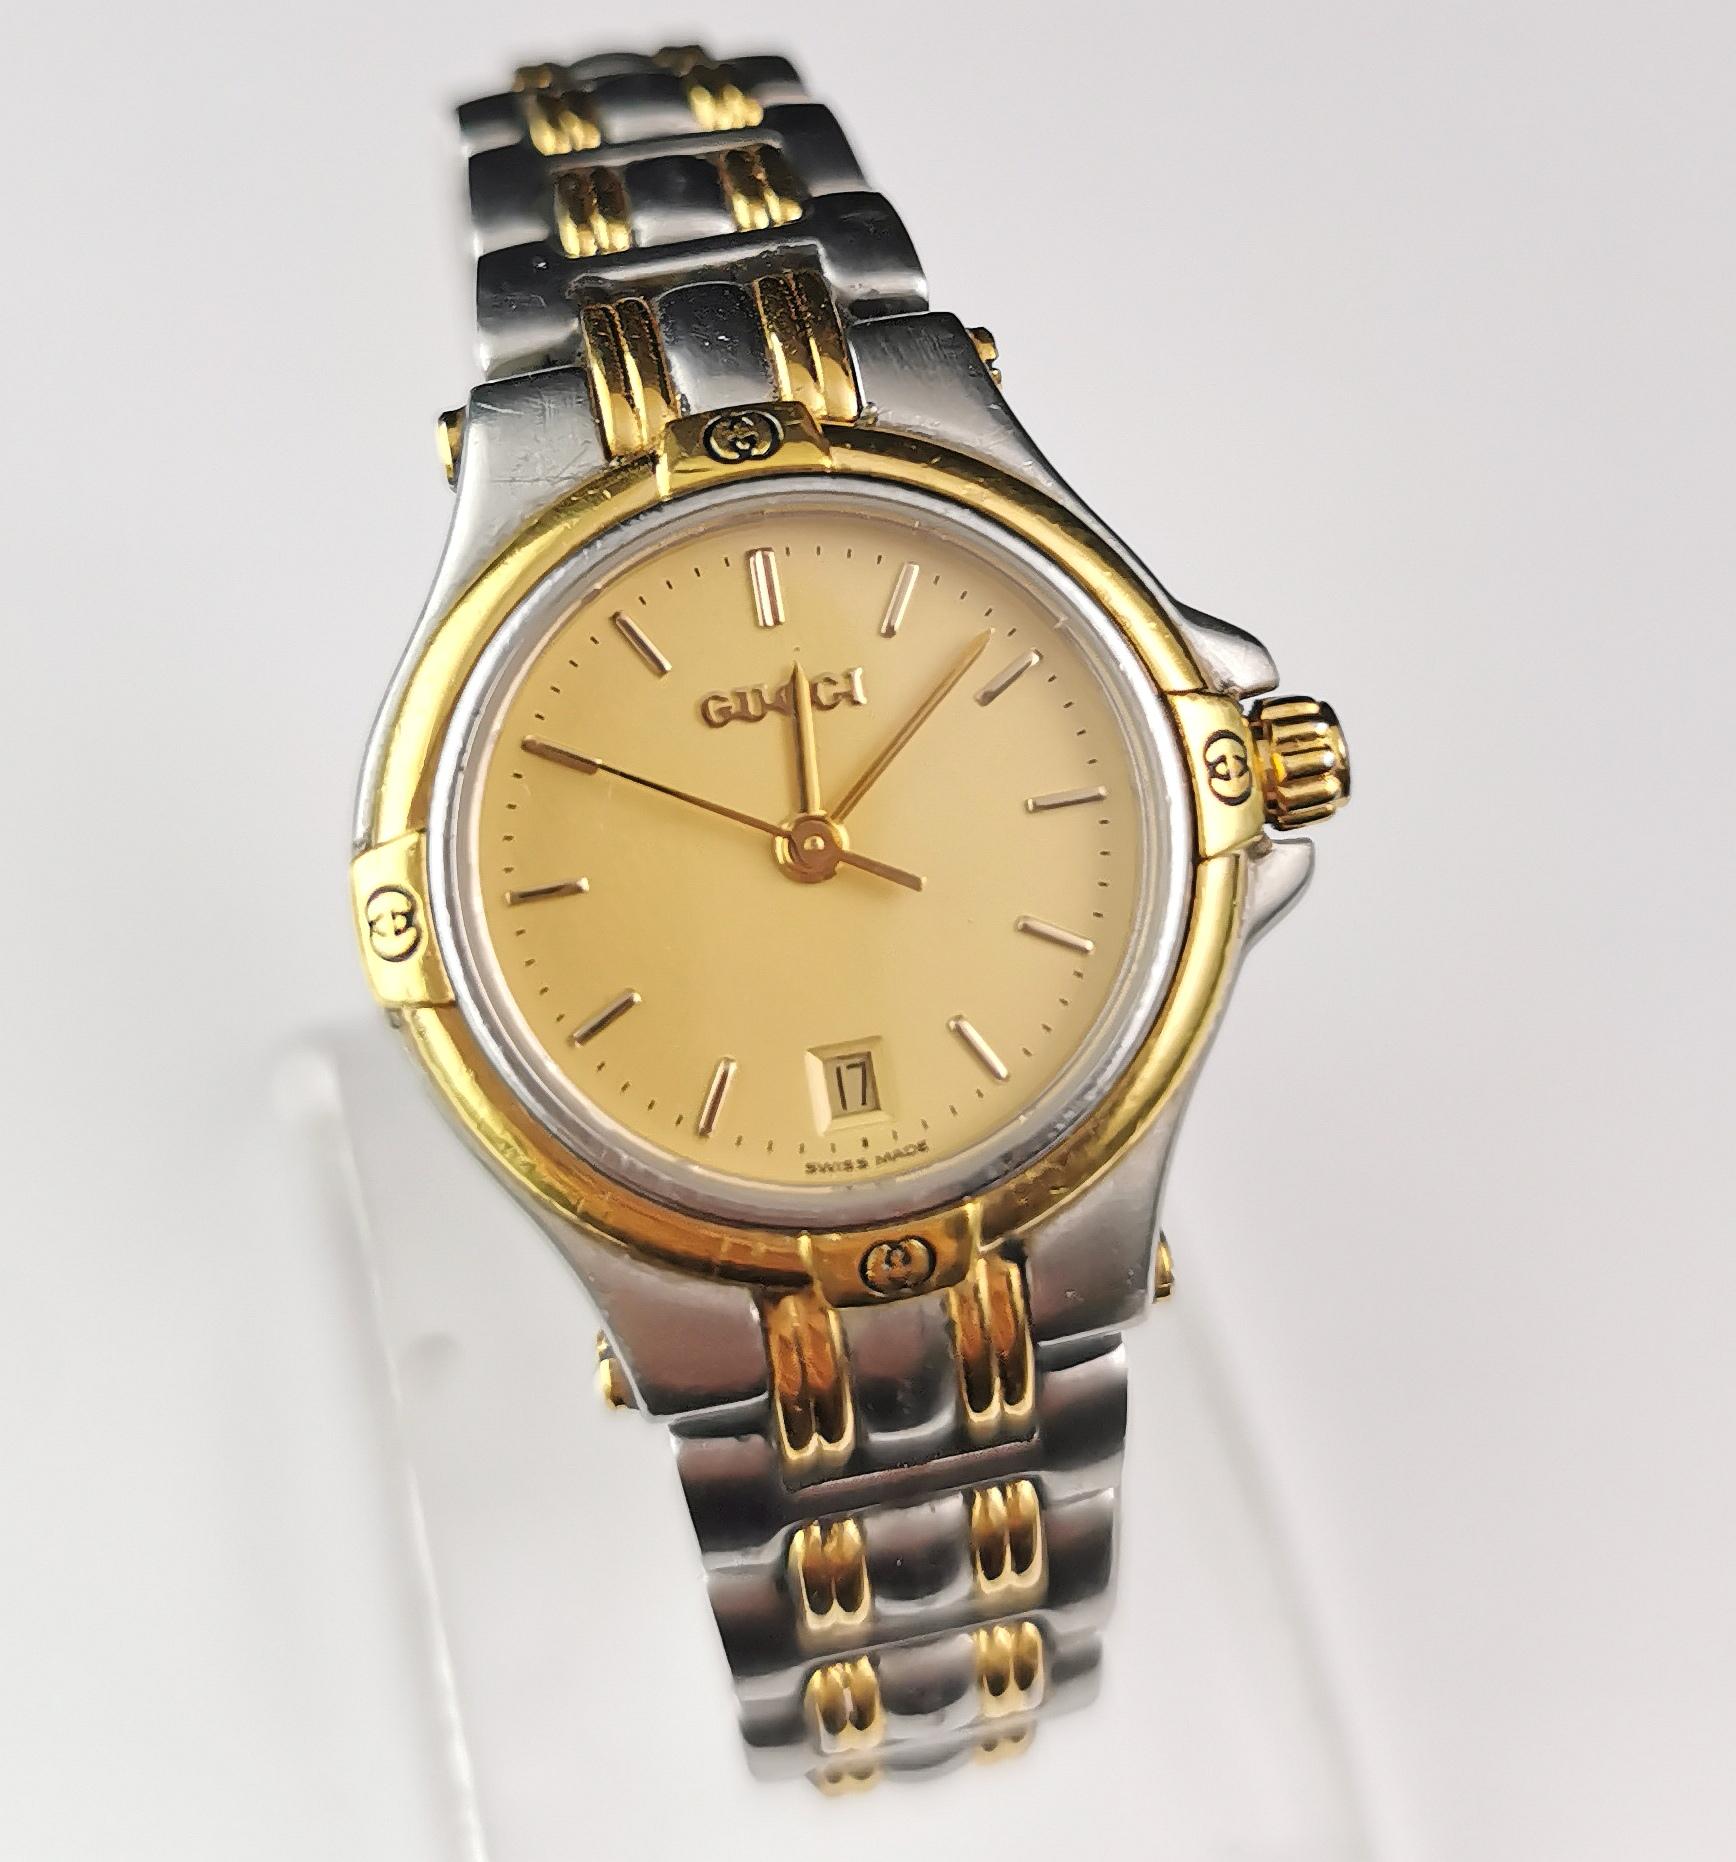 Eine elegante Gucci 9040l Armbanduhr aus Edelstahl und vergoldet. 

Dies ist eine Armbanduhr mit einem klobigen Design, es hat einen Ziegelstein Link Armband Armband aus Edelstahl und 18ct Goldplatte. 

Das Gehäuse ist aus Edelstahl mit vergoldeten